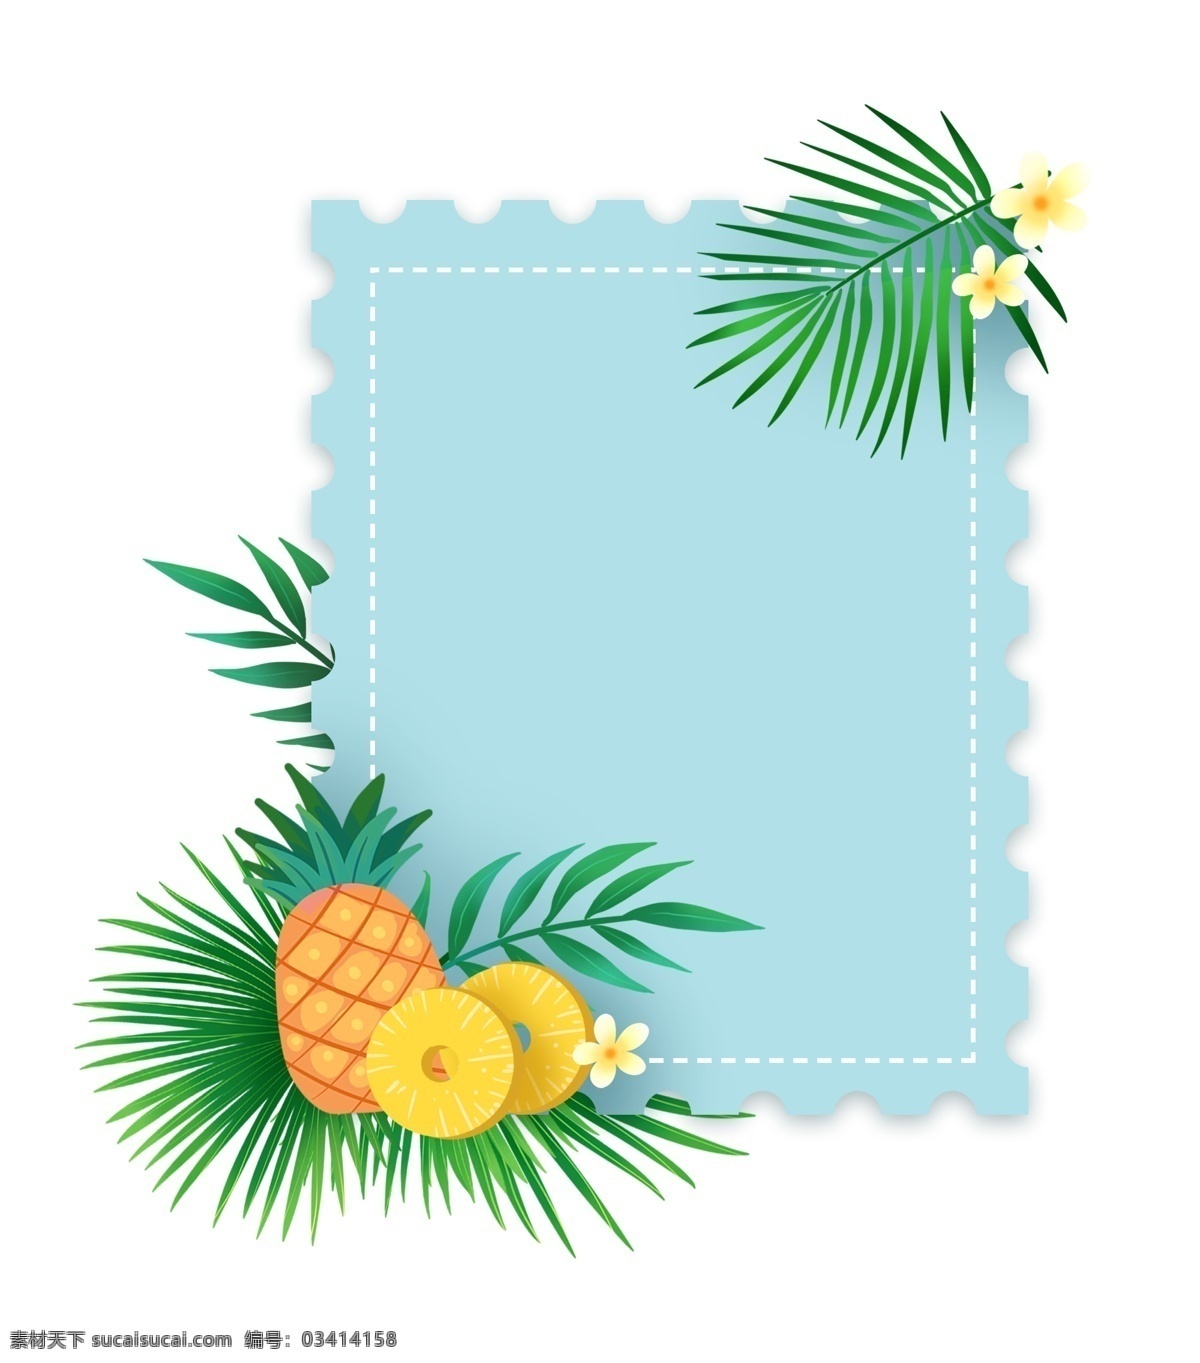 夏季 水果 菠萝 文本 框 免 抠 夏天 凤梨 小清新 蓝色 植物 叶子 绿叶 水果边框 菠萝边框 黄色 热带水果 文本框 花朵